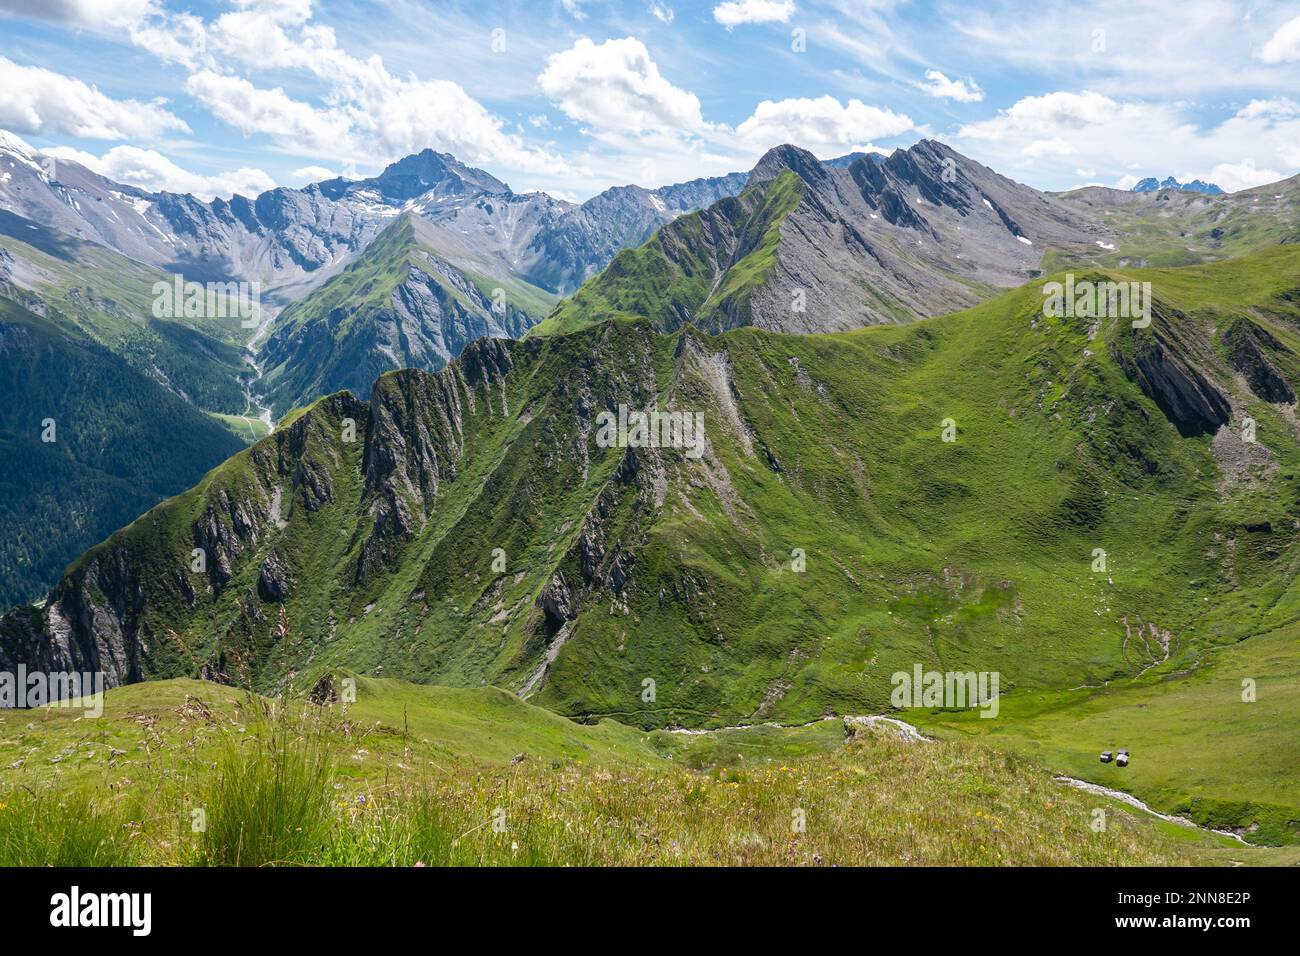 Una vista panoramica sulle Alpi Samnaun con le cime più alte visibili in lontananza. La foto è stata scattata dall'Alp Trida Sattel in Austria. Foto Stock